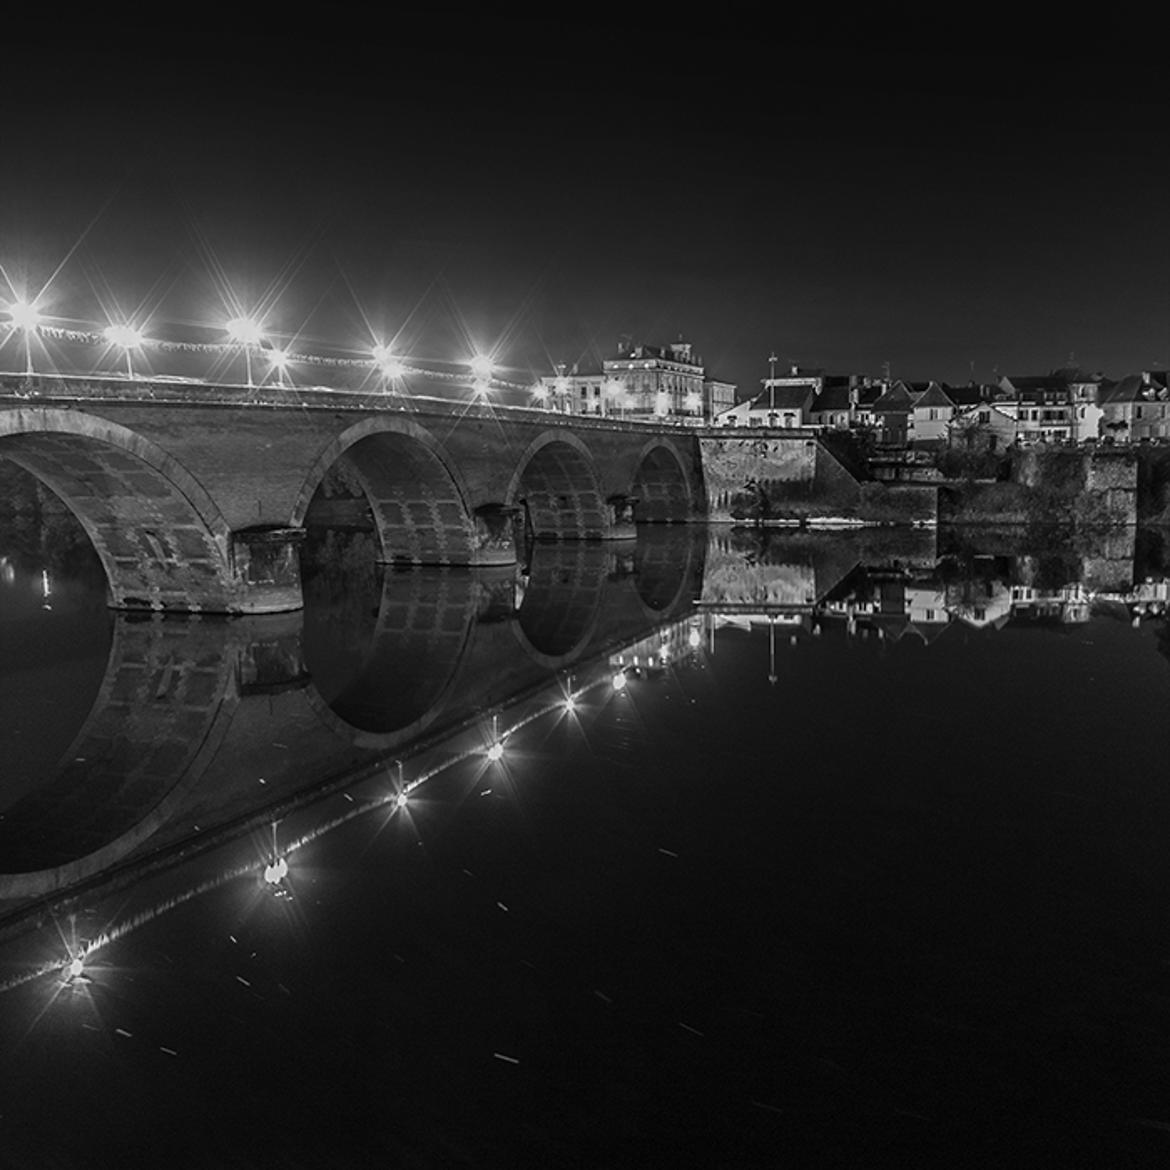 Le pont vieux de Bergerac de nuit.